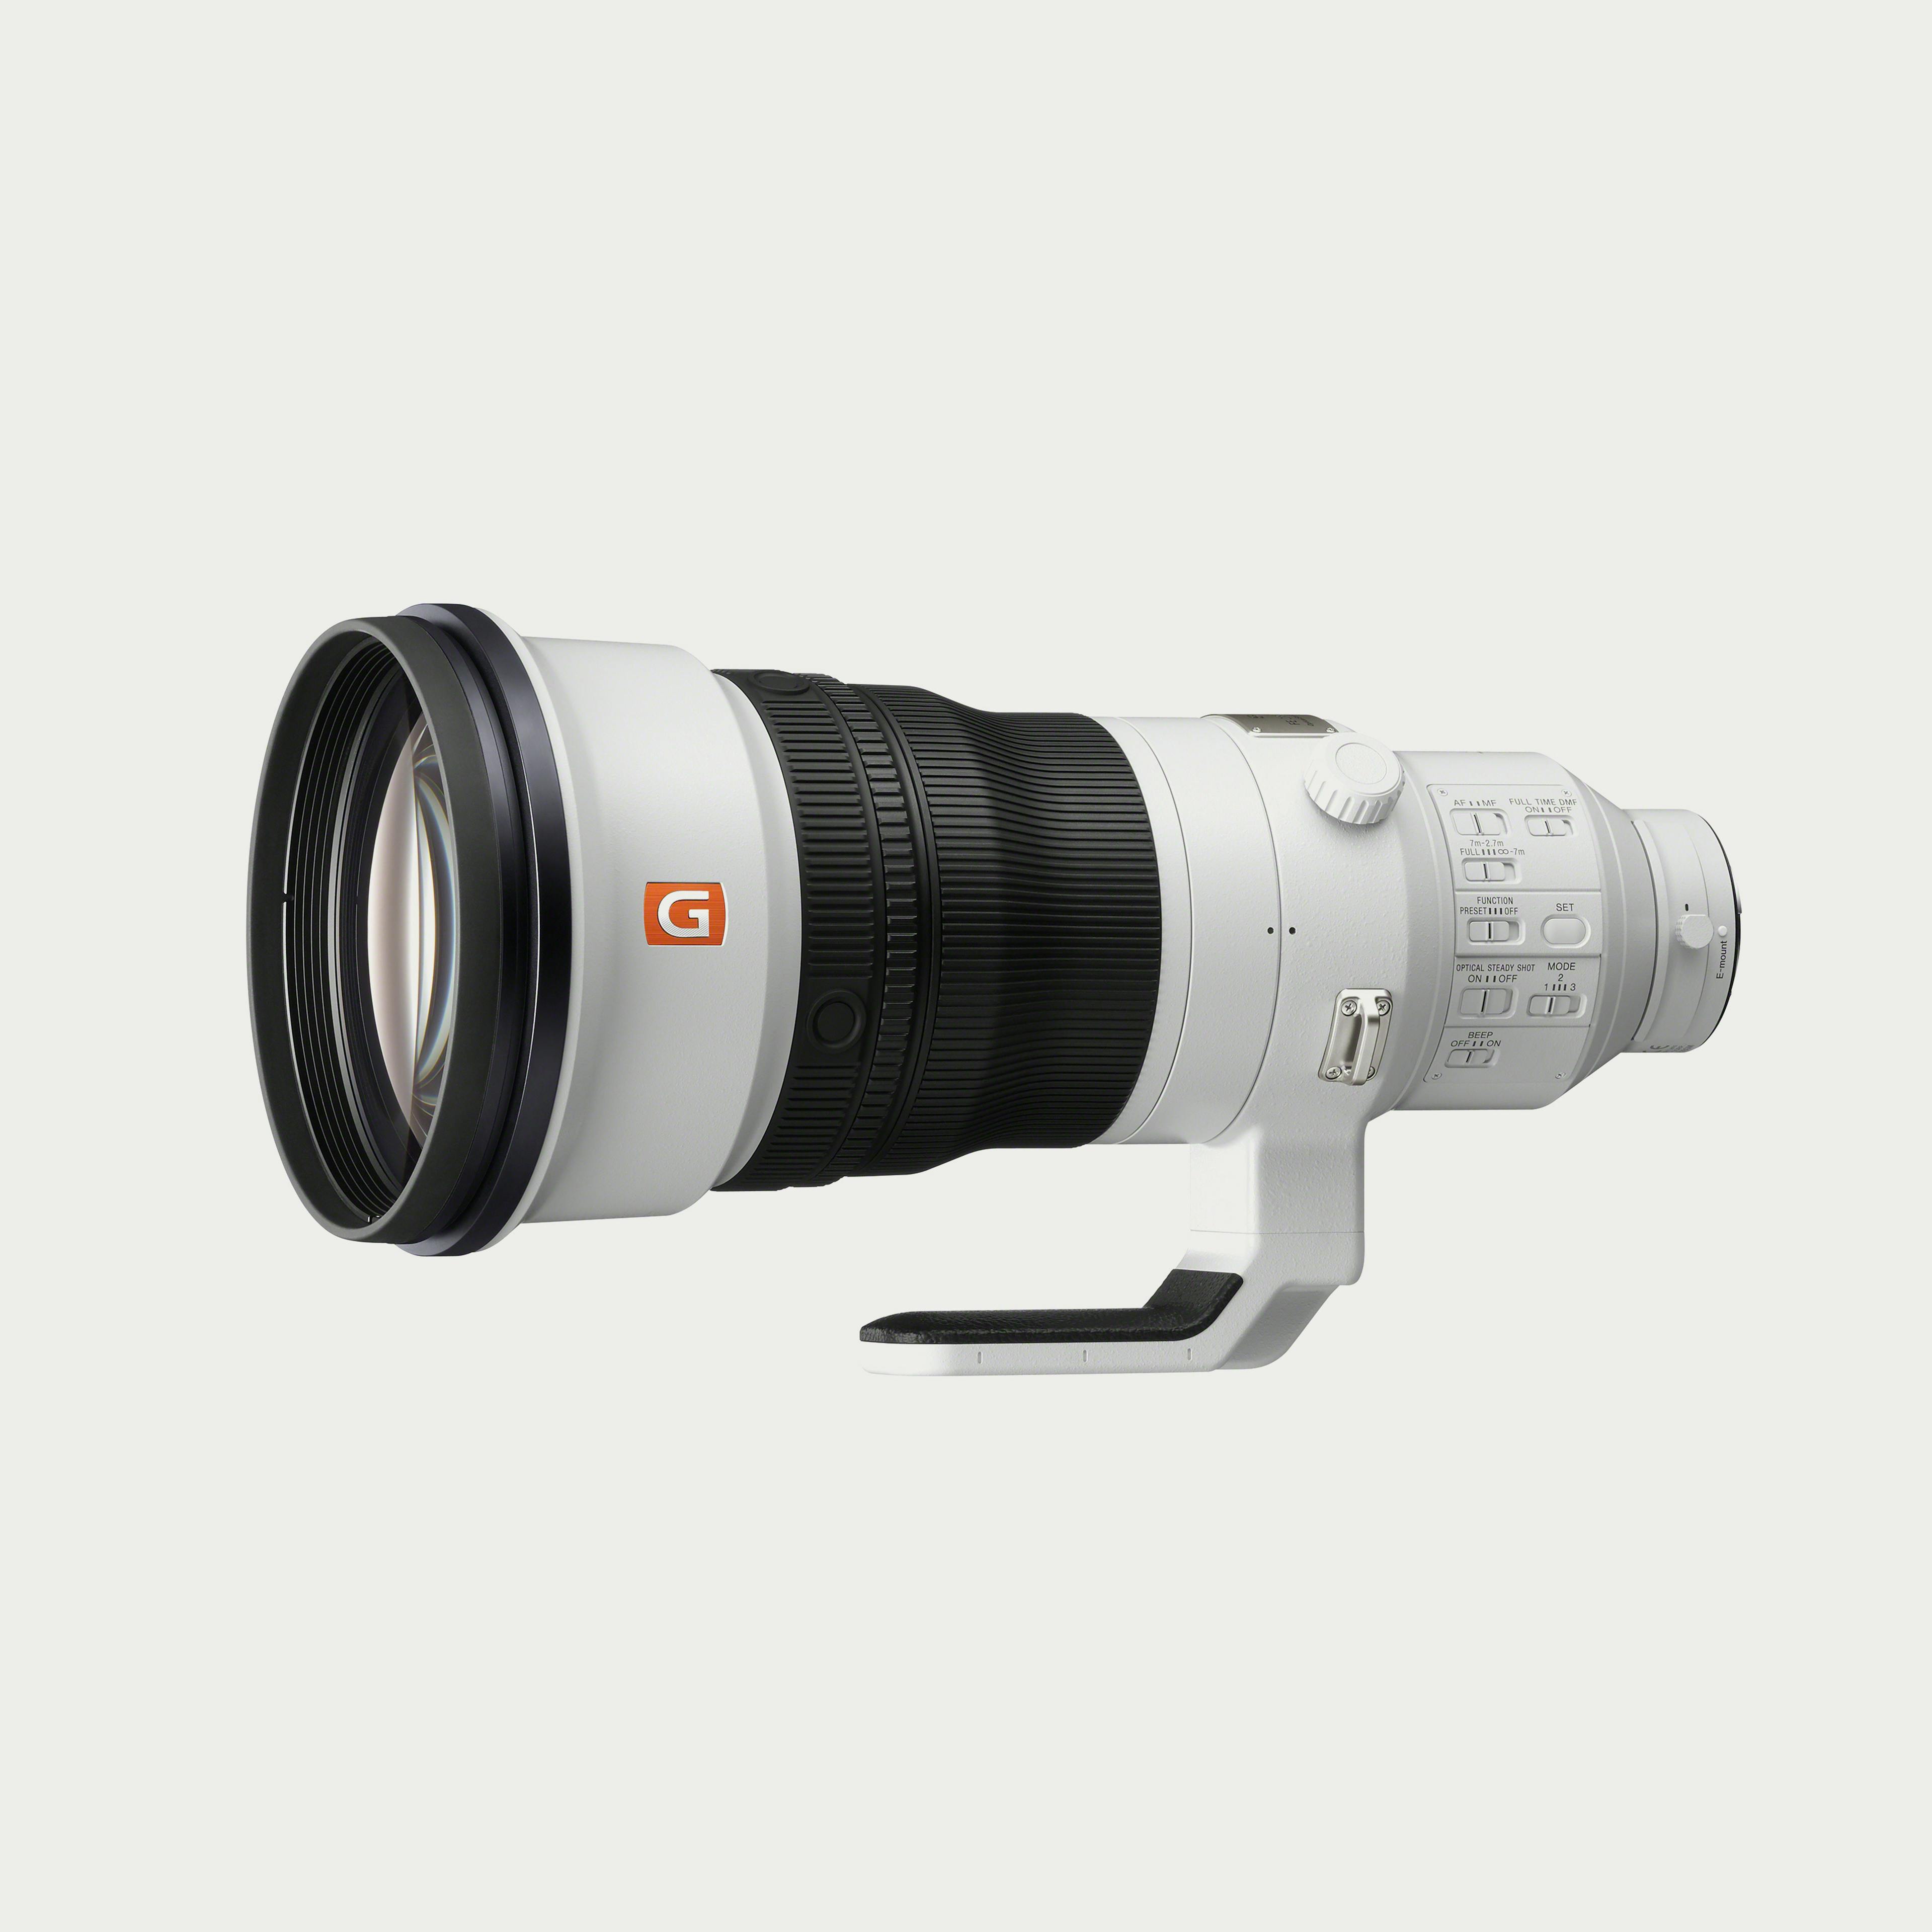 FE 400mm f/2.8 GM OSS Lens